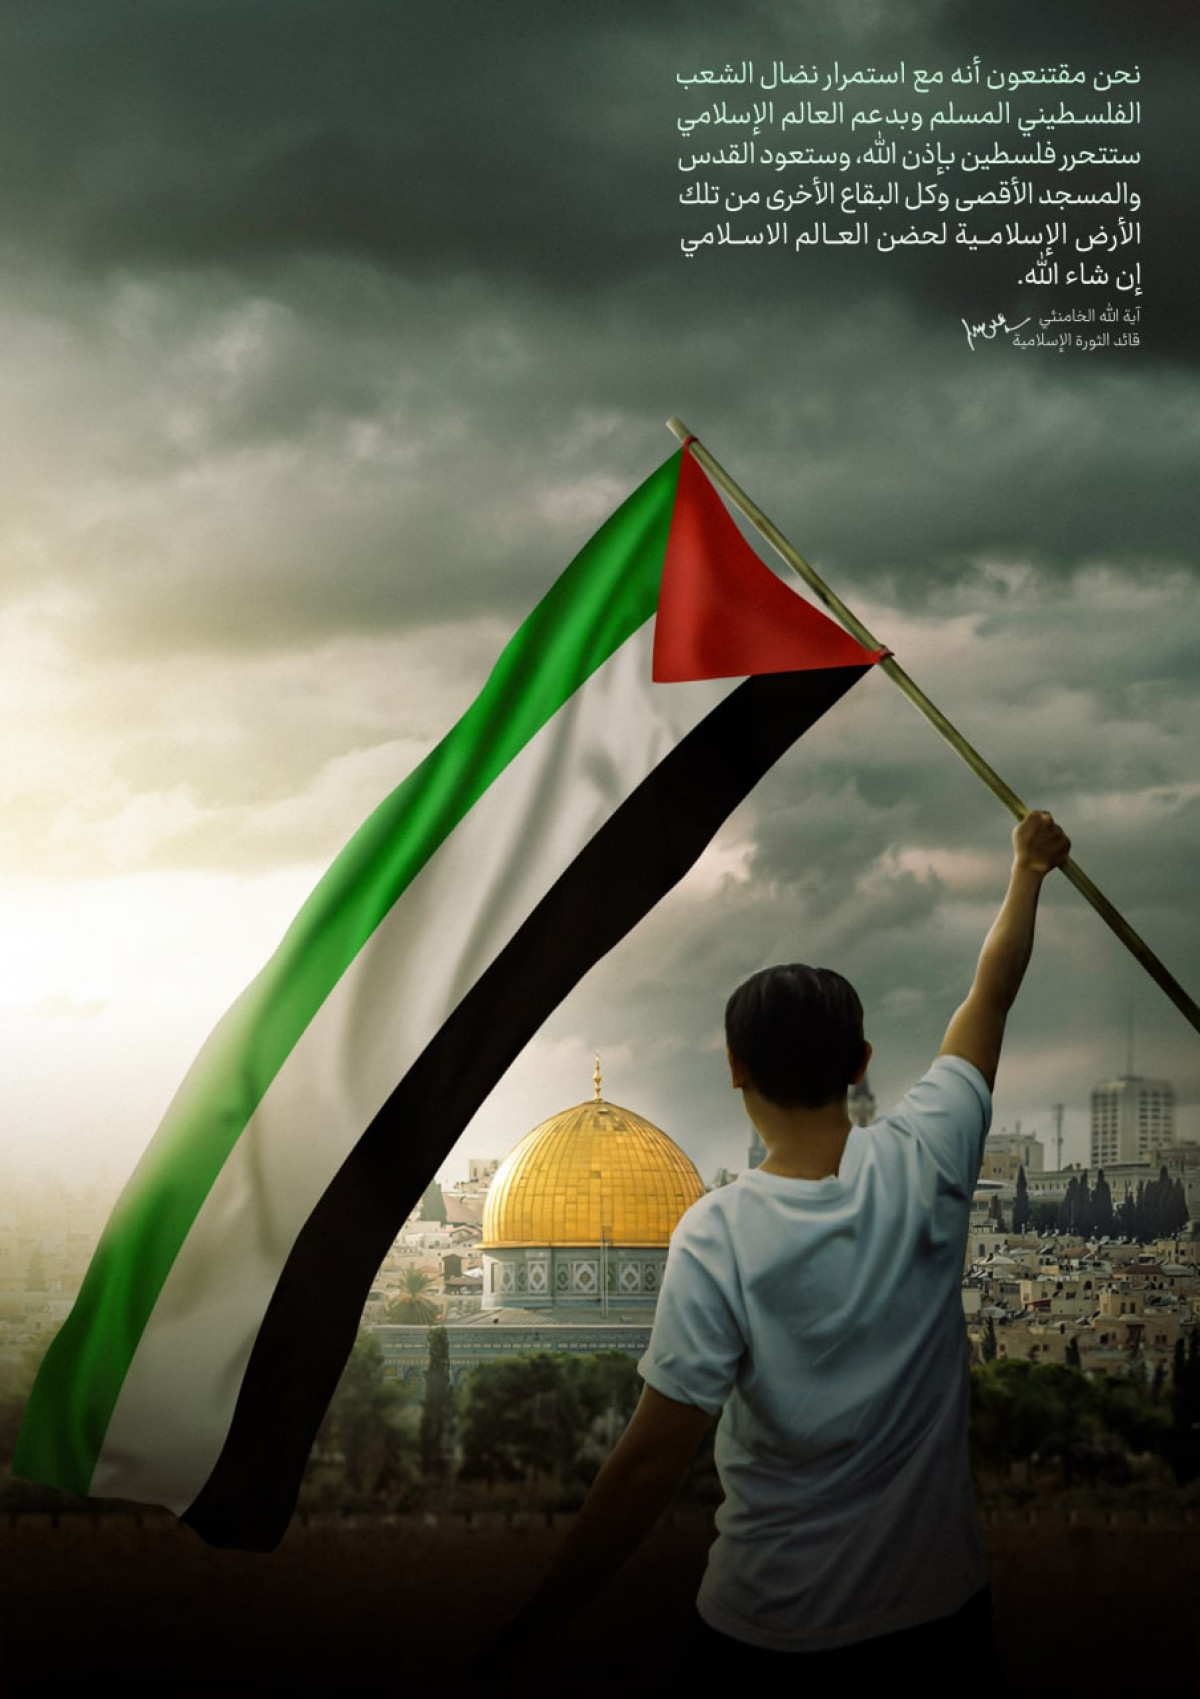 ستتحرر فلسطين بإذن الله